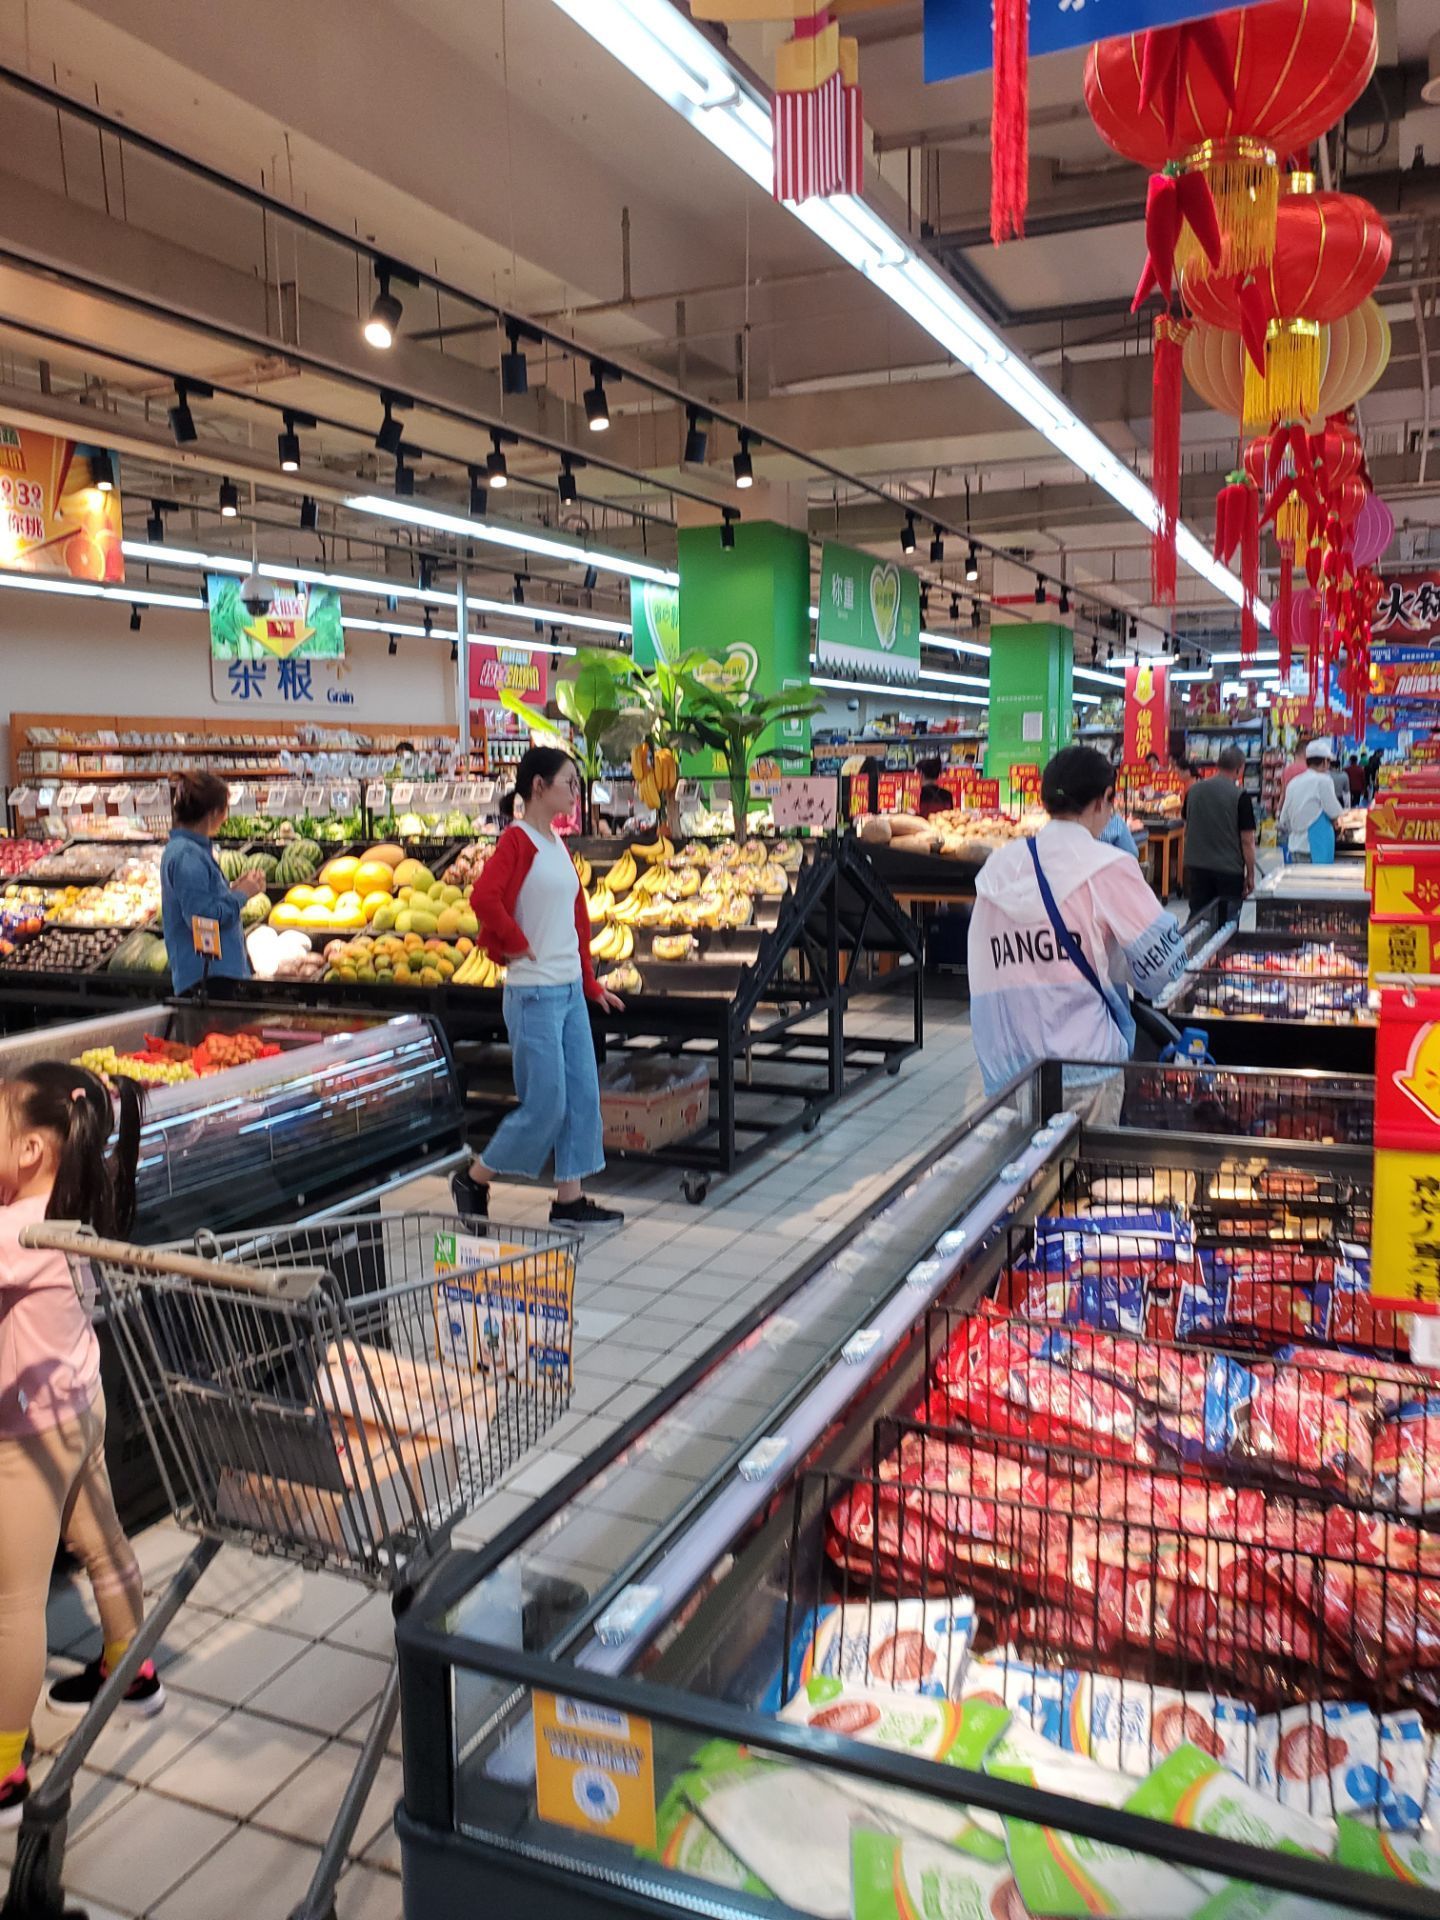 专访沃尔玛“智能超市”：90%商品线上化，定价比照大卖场，强化标准化生鲜，核心在于供应链 - 知乎